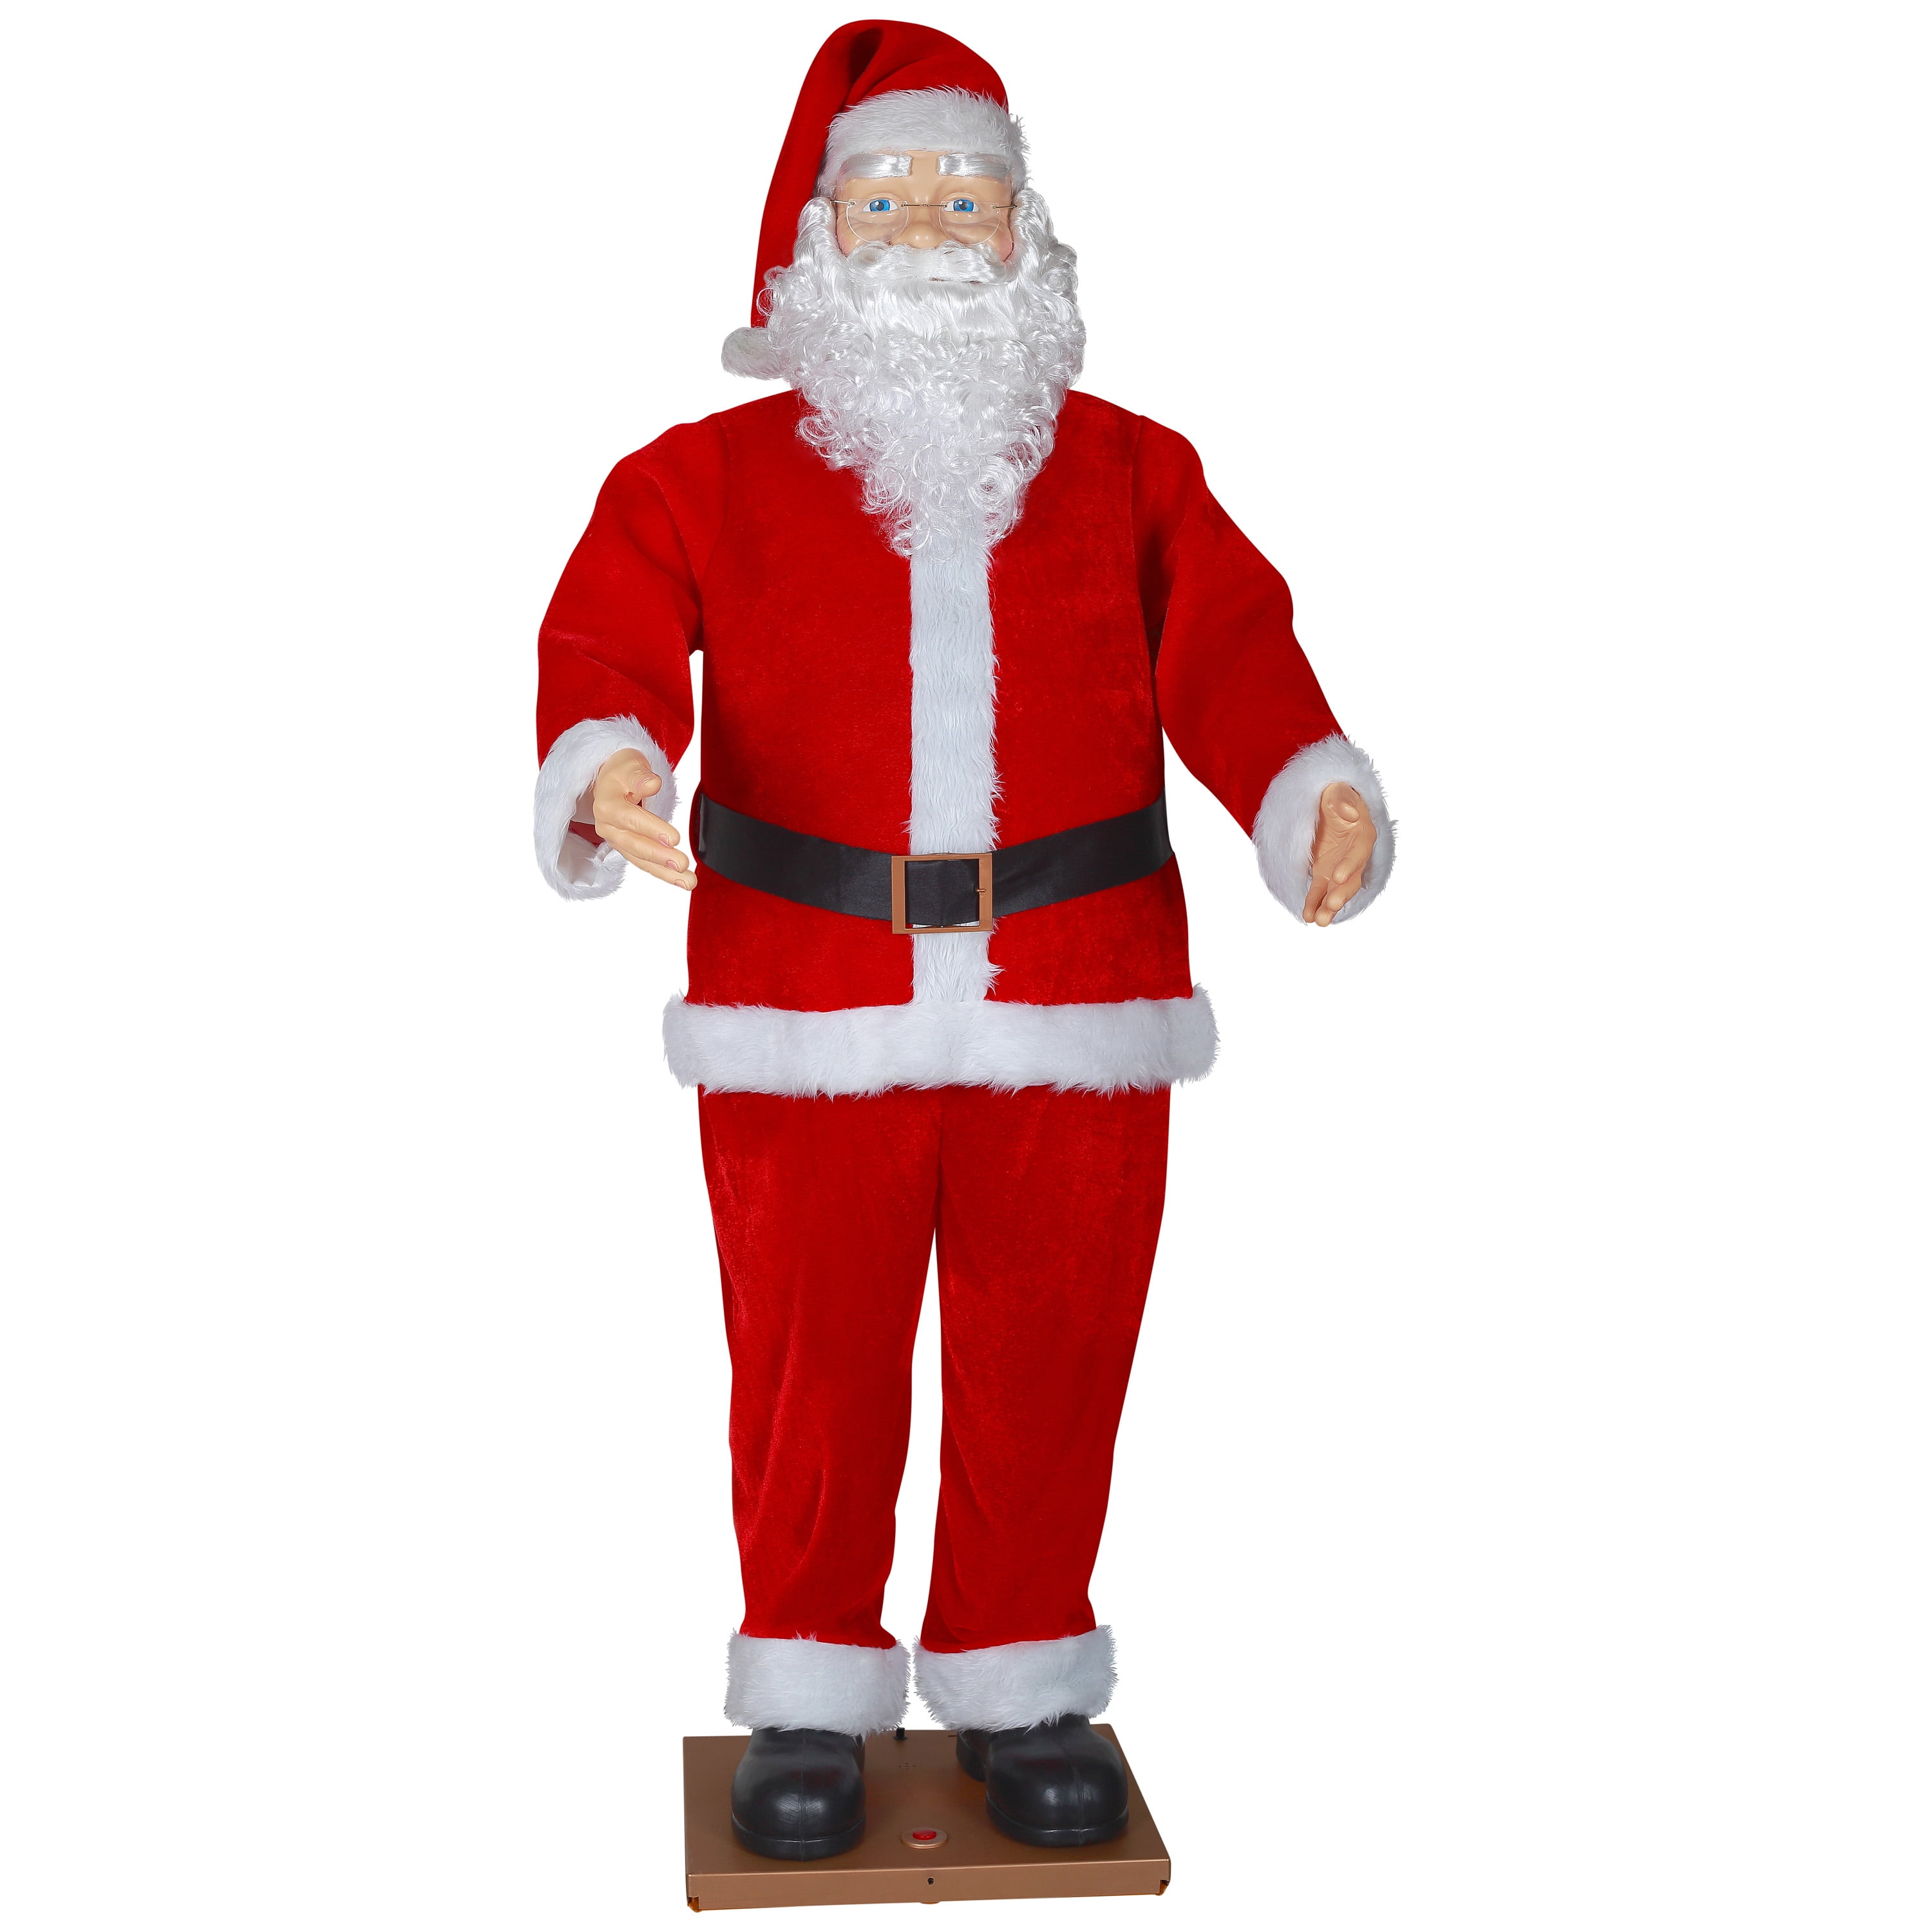 Size 7 tall X 6 wide Santa Mini Christmas Ornament